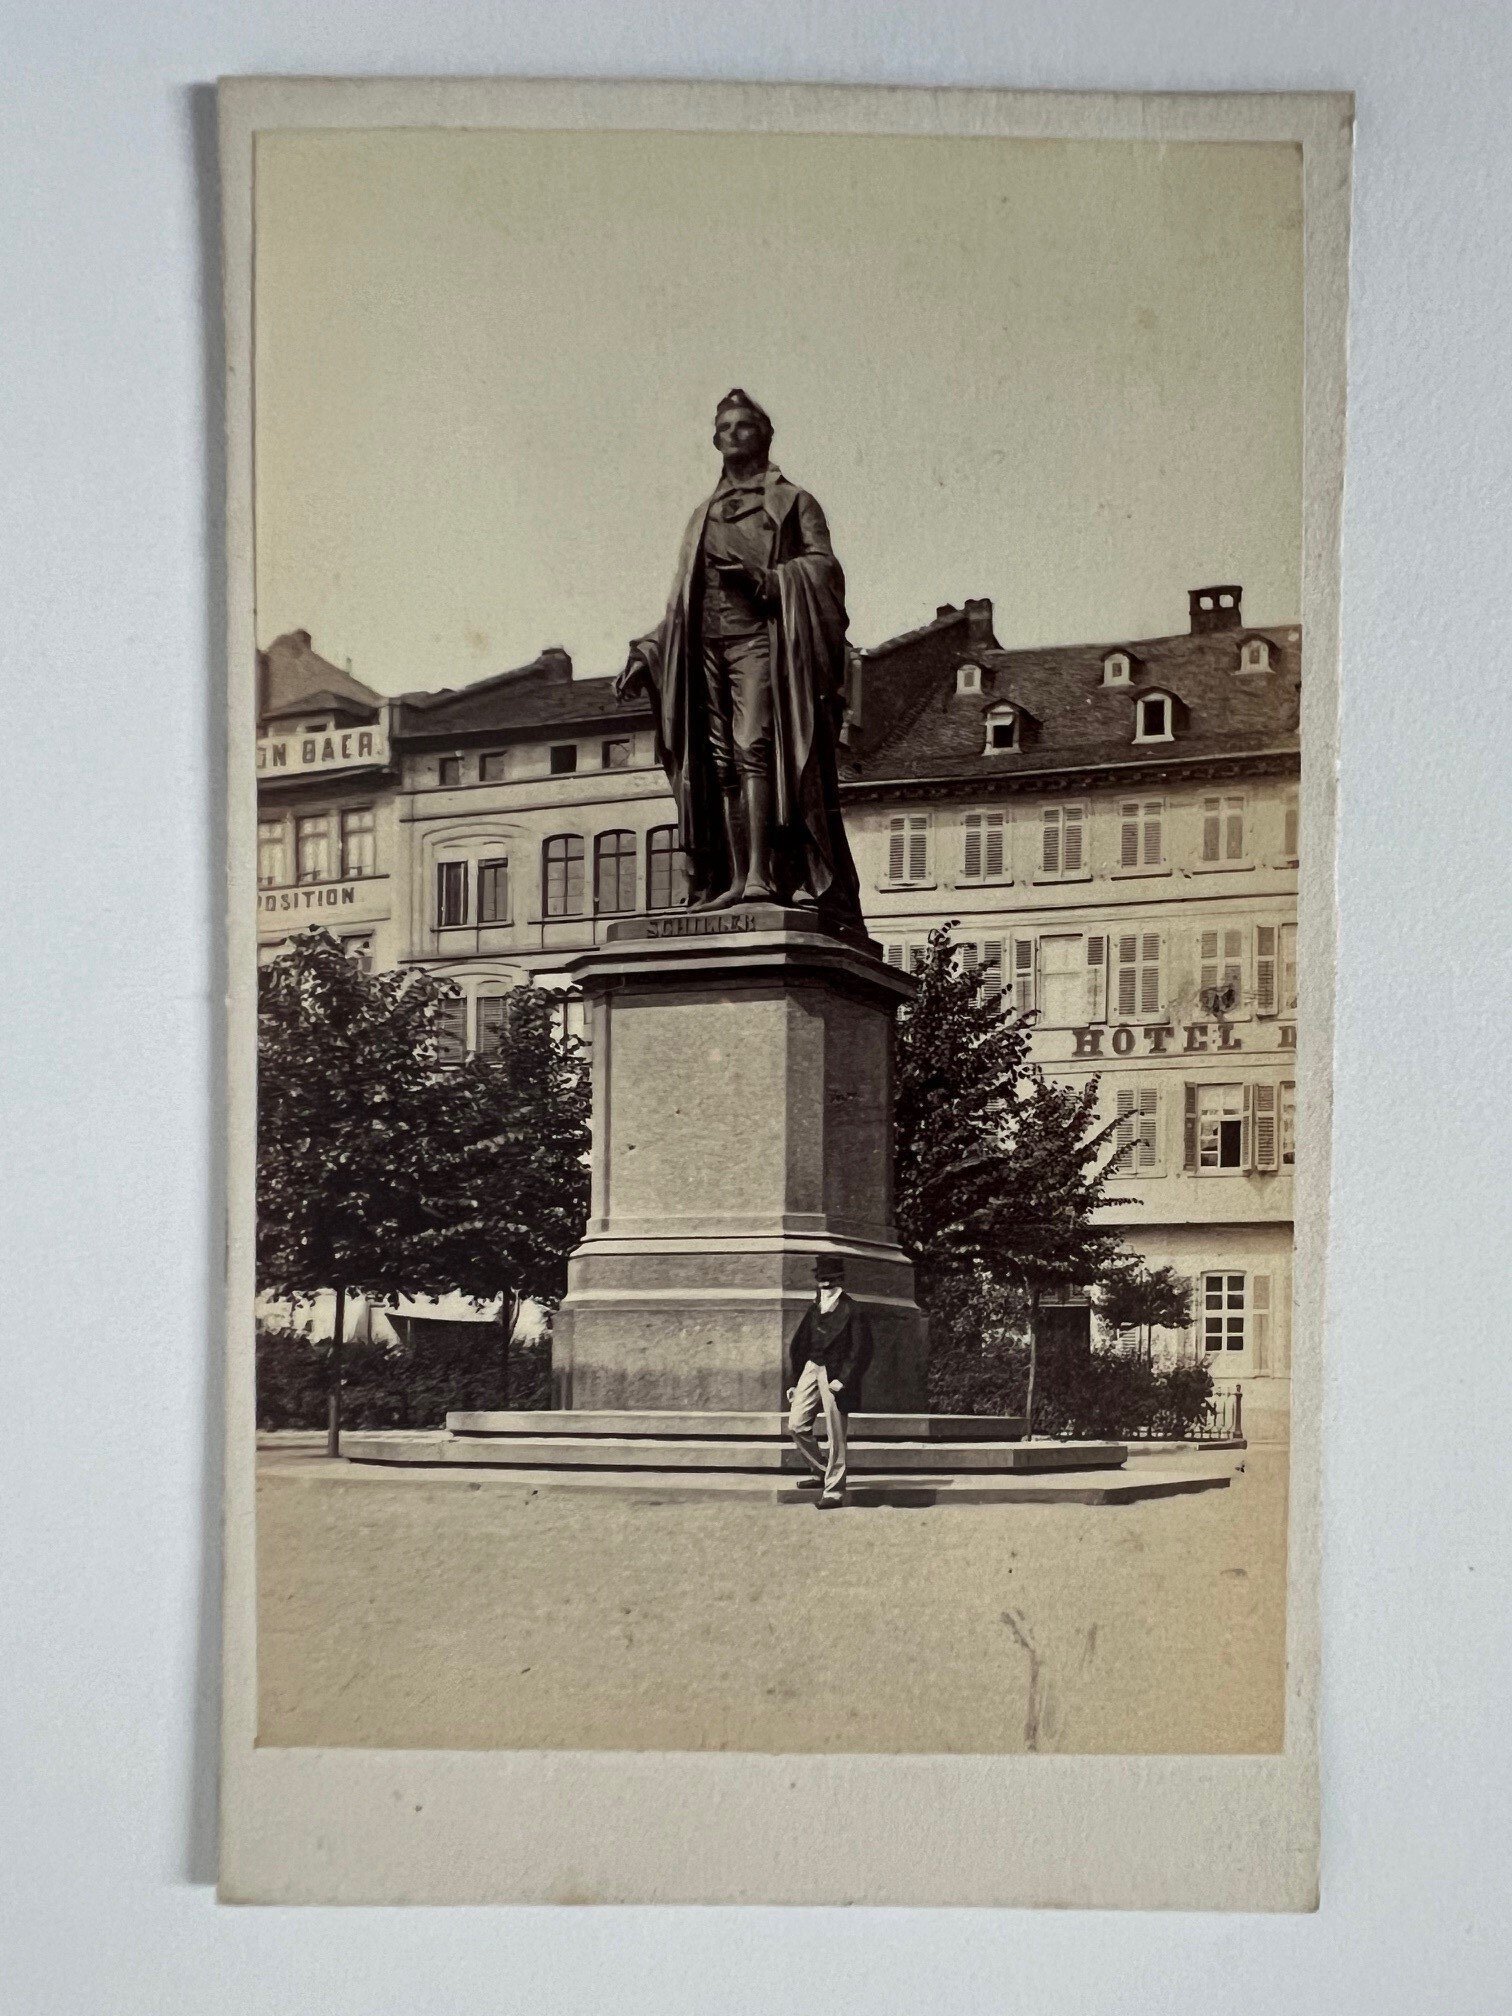 CdV, Theodor Creifelds, Frankfurt, Nr. 266 Schiller-Monument, ca. 1870. (Taunus-Rhein-Main - Regionalgeschichtliche Sammlung Dr. Stefan Naas CC BY-NC-SA)